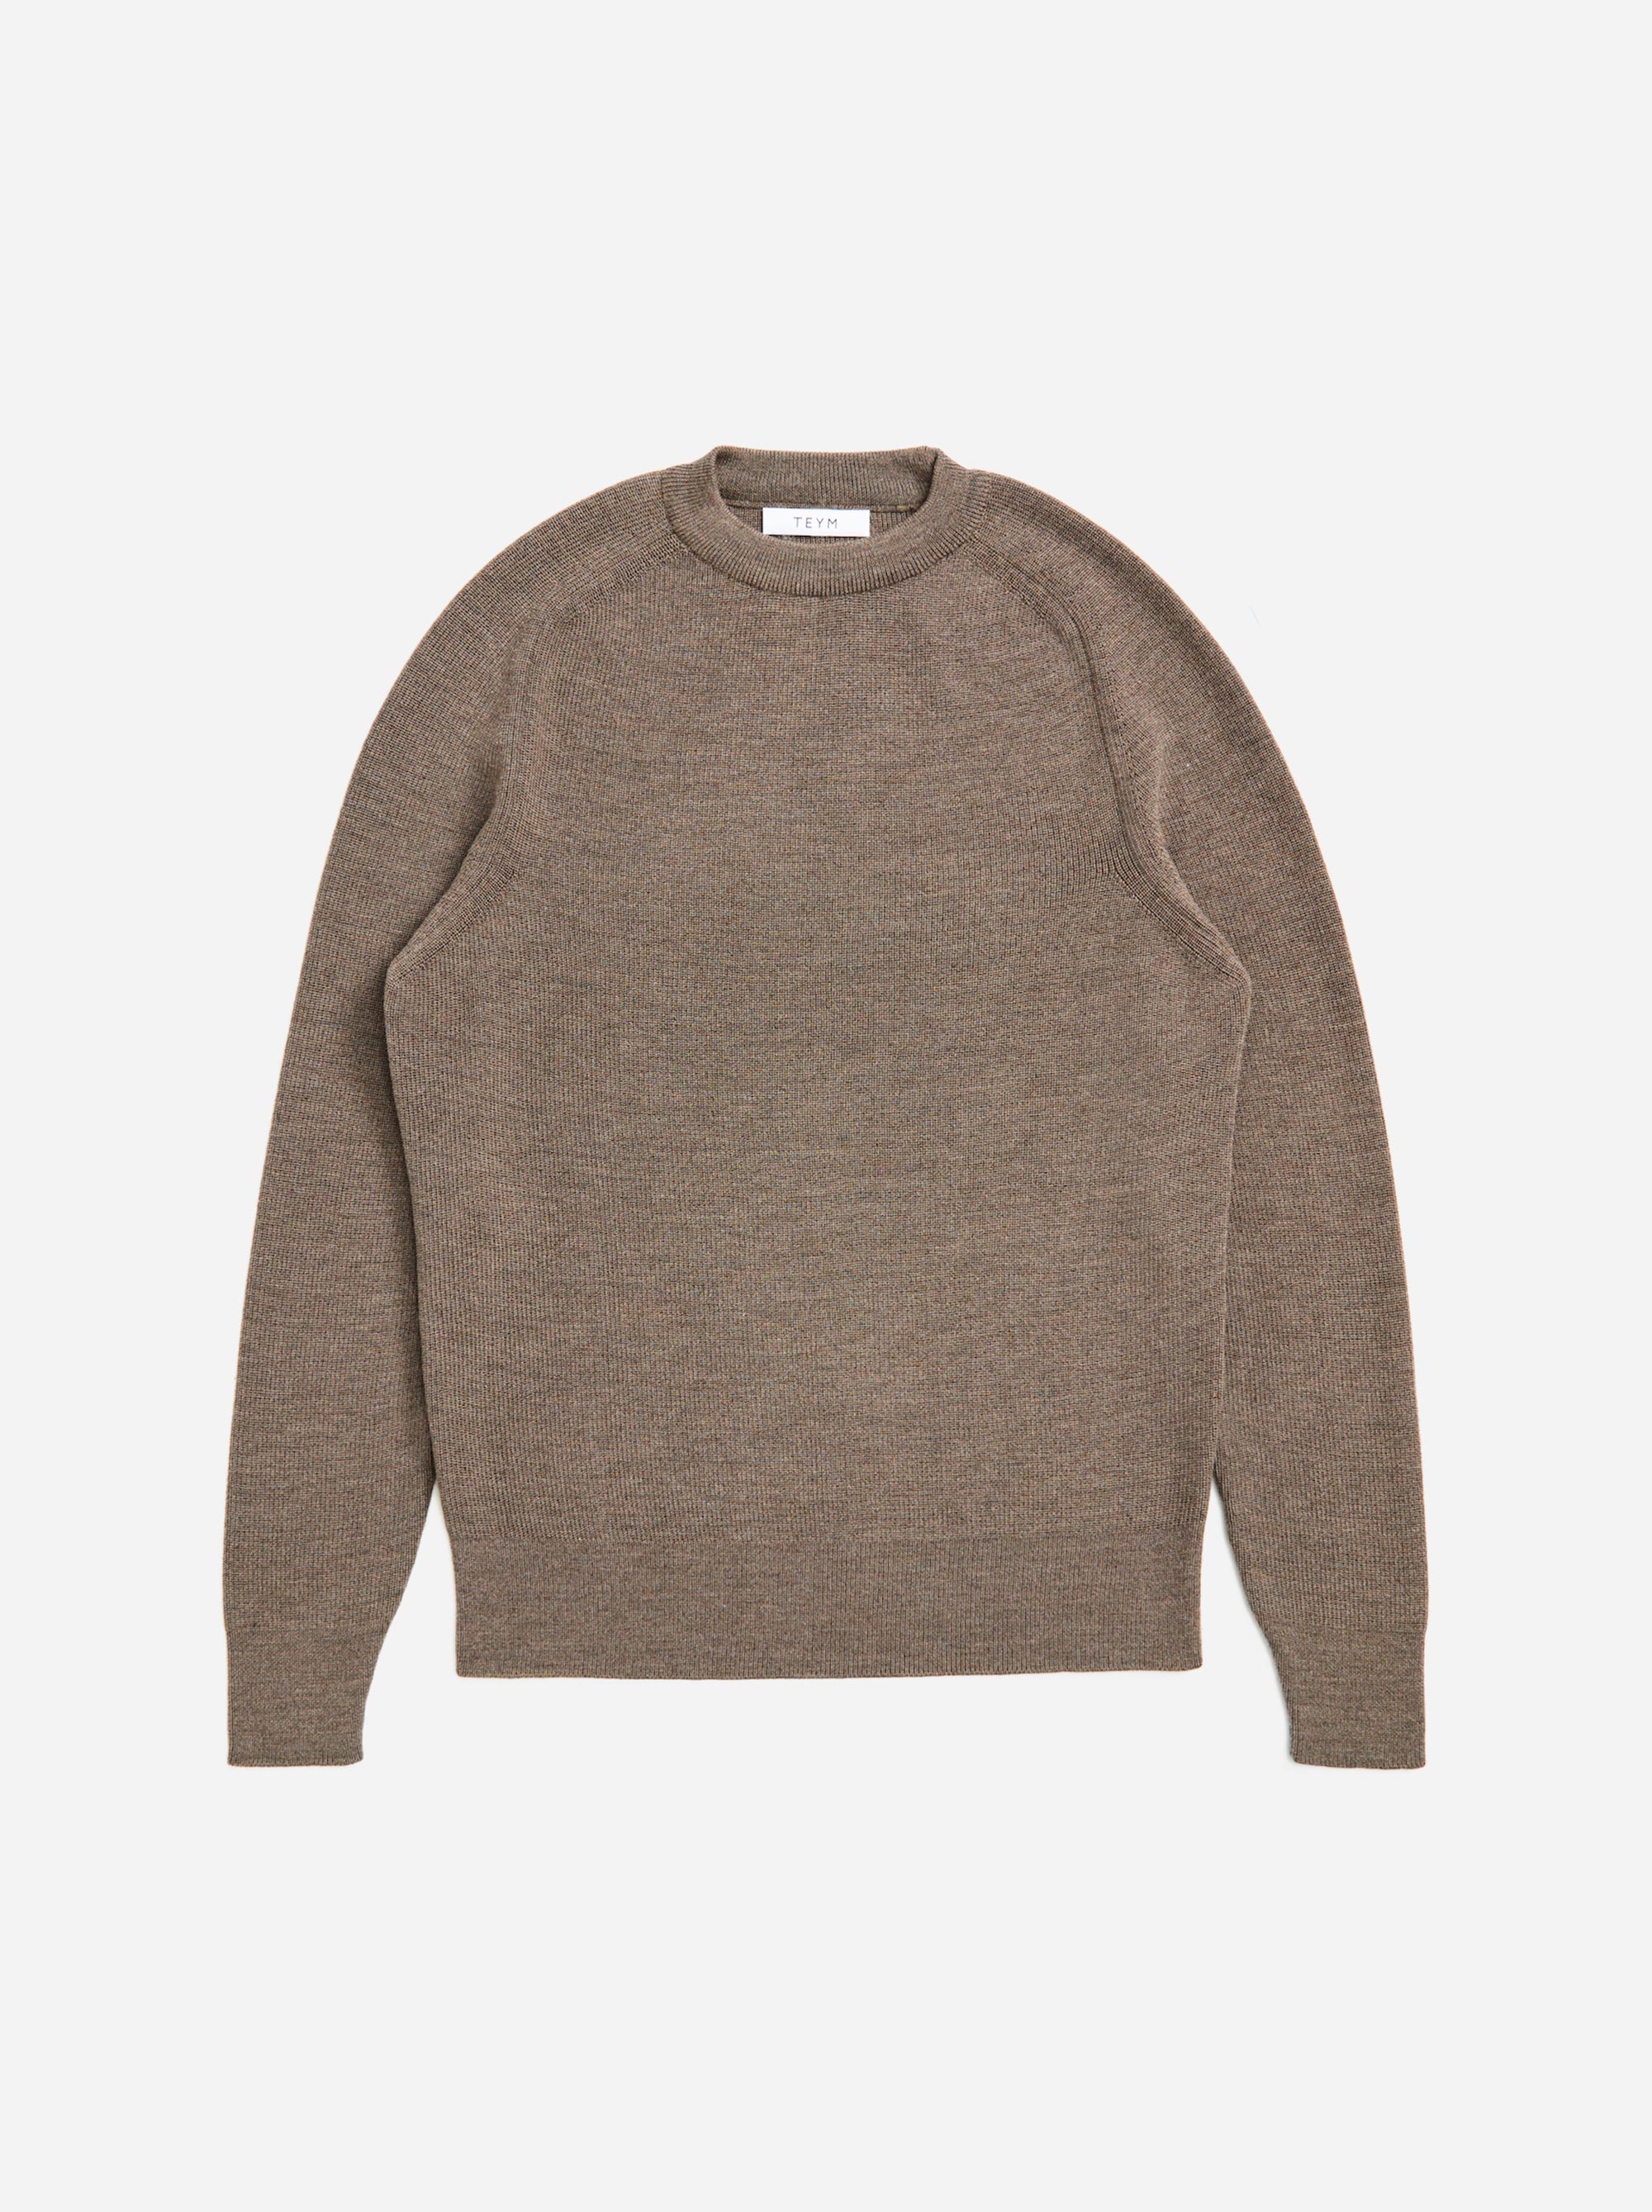 Teym - The Merino Sweater - Men - Grey - 4